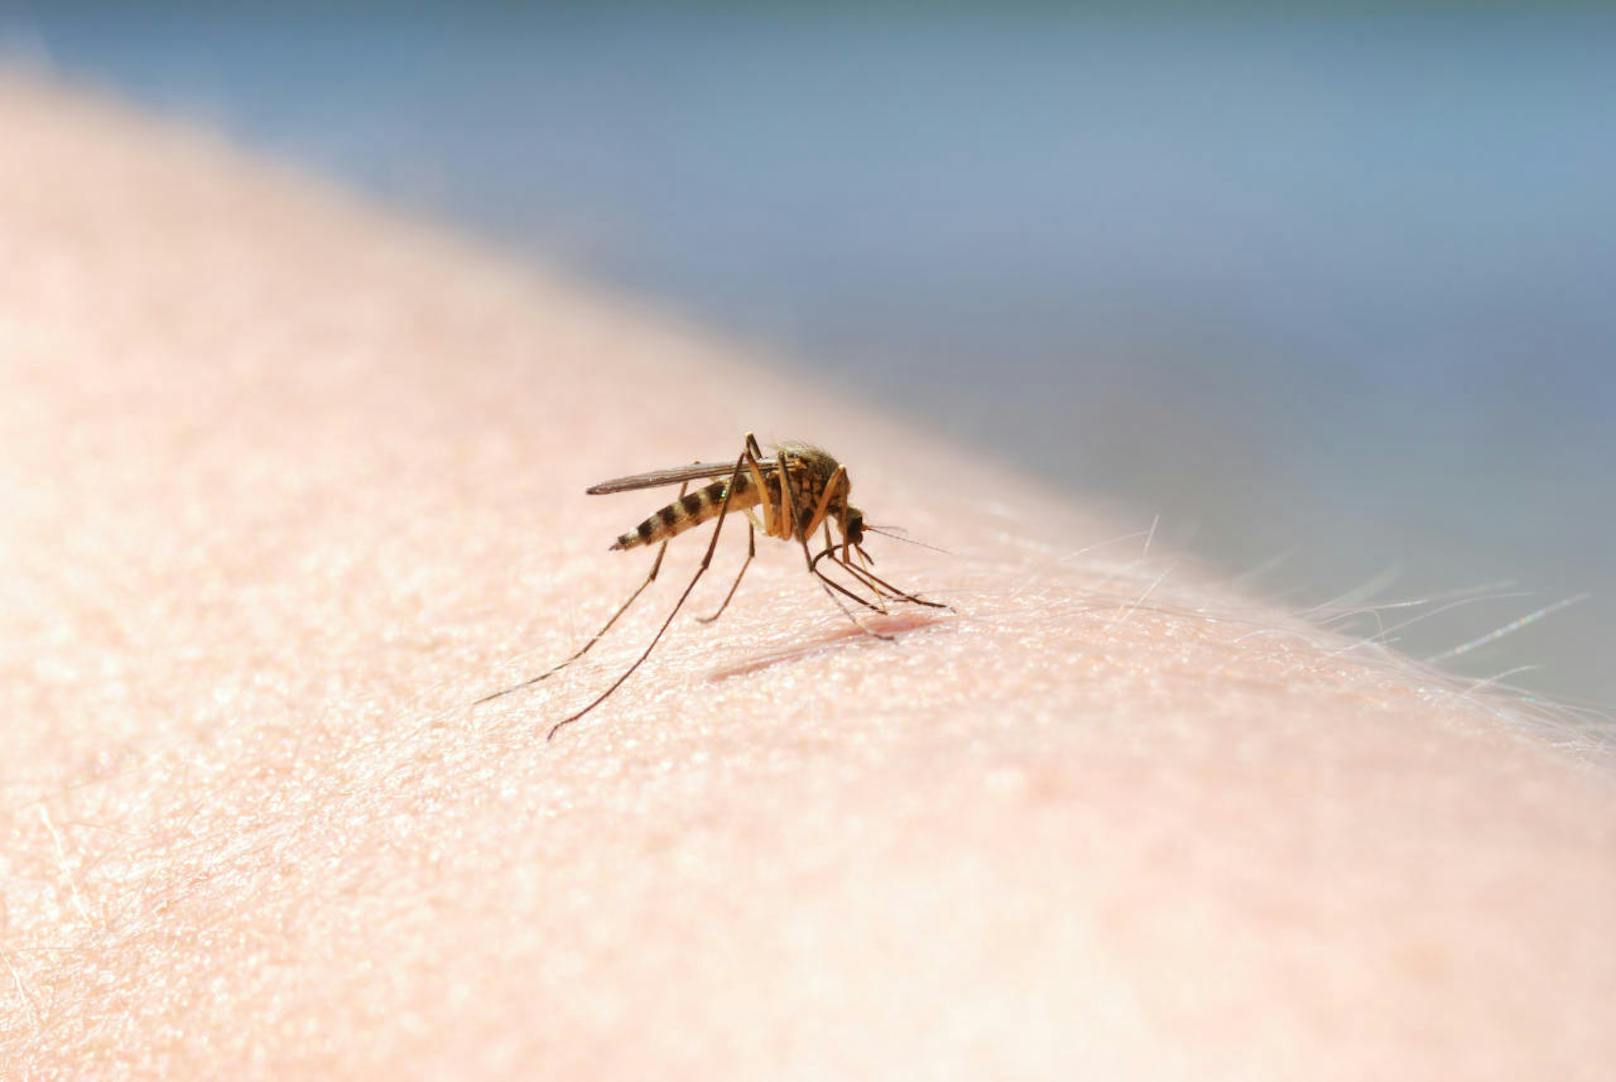 Der letzte Stachel ist der übelste: Durch ihn befördert die Mücke ihren Speichel in unseren Körper, um die Blutgerinnung zu unterbinden.